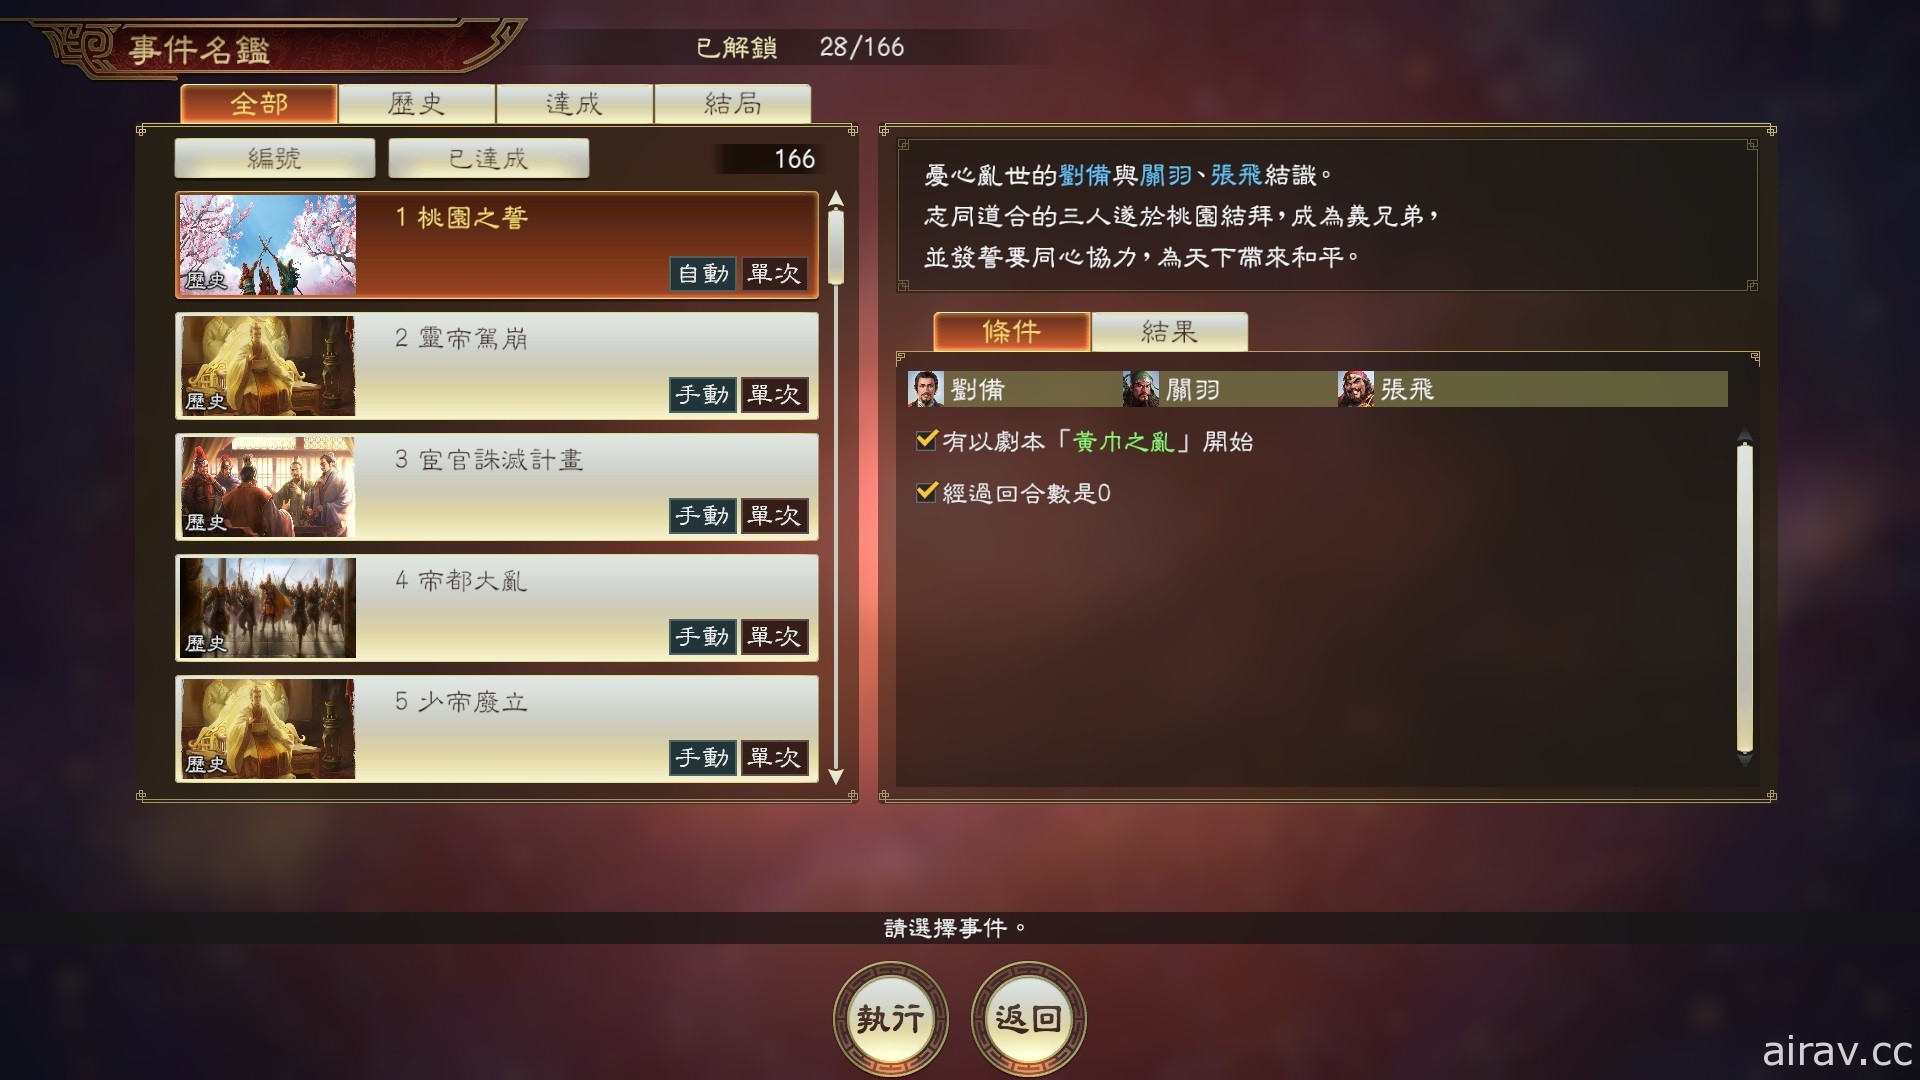 《三國志 14 with 威力加強版》預定 4 月 28 日更新 追加「皇帝呂布」假想劇本等內容